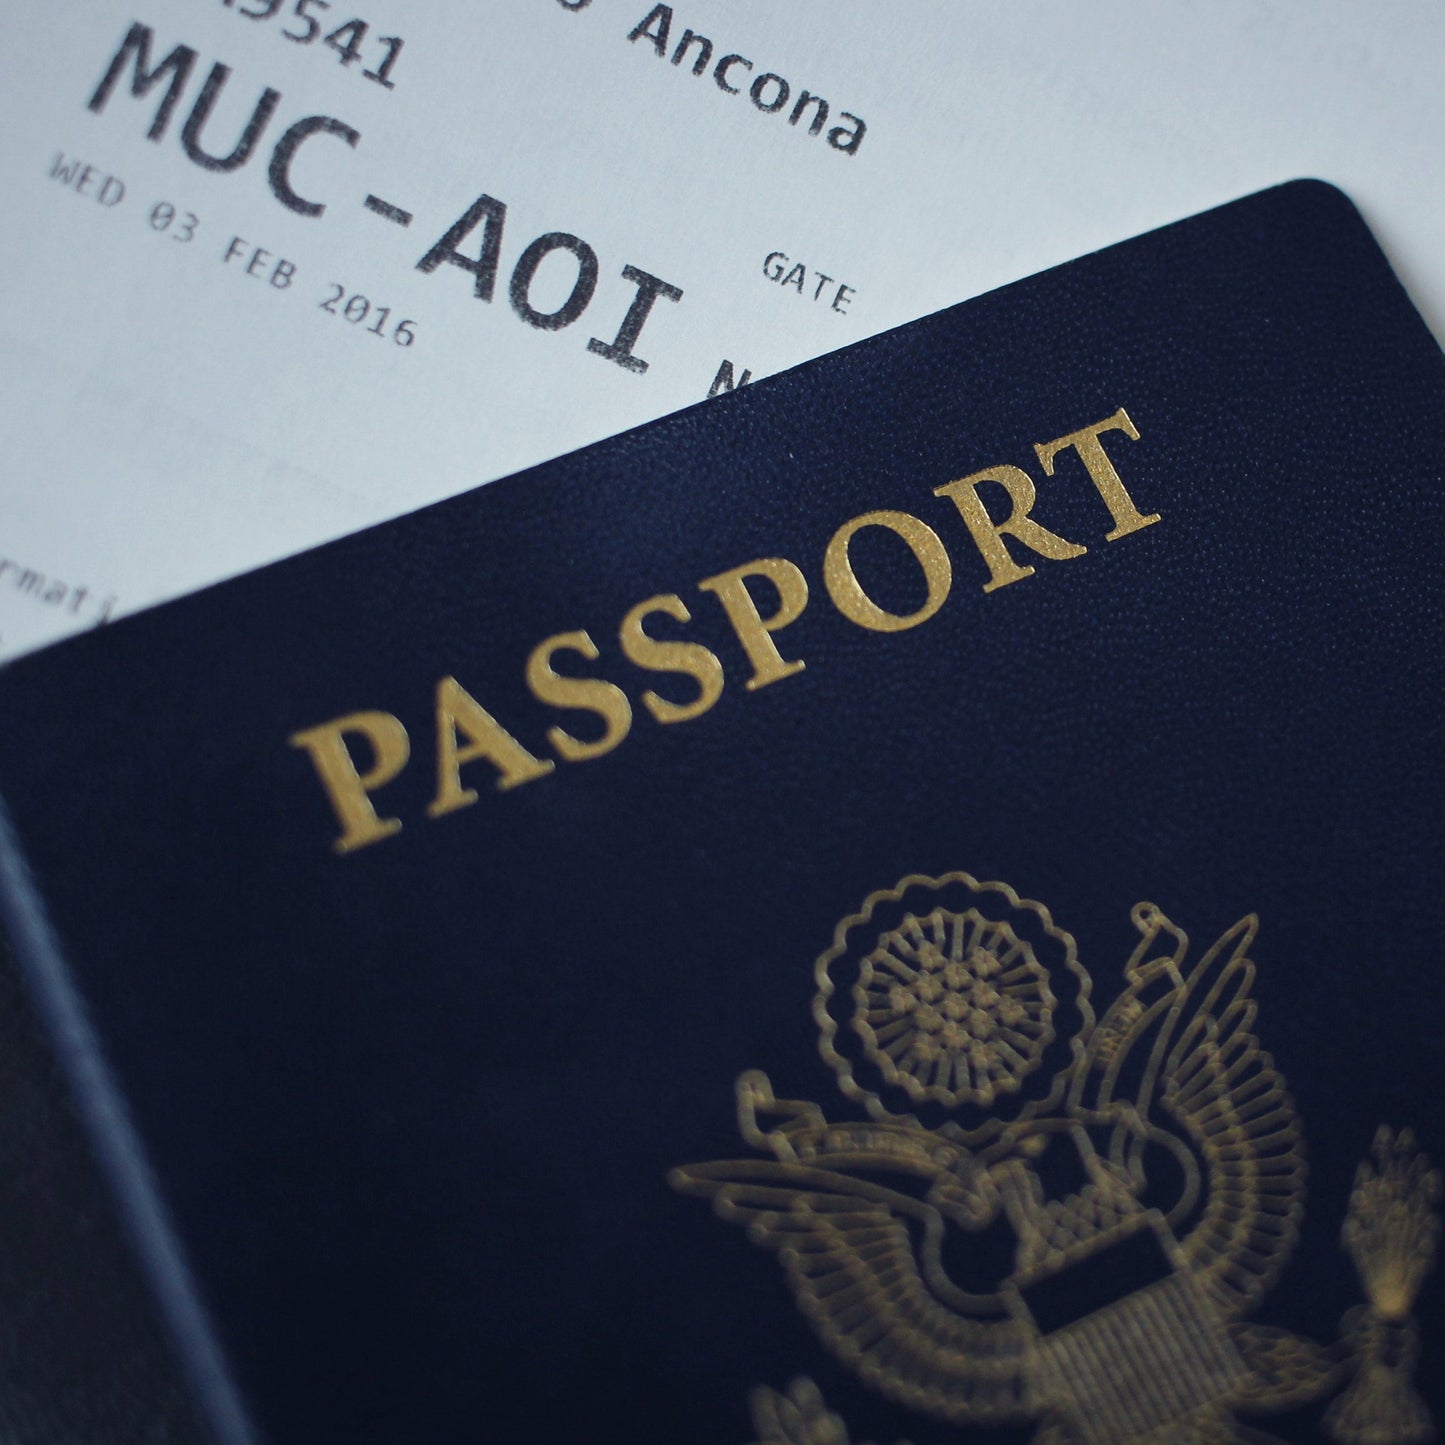 Passport & Visa Photo - Inquiry